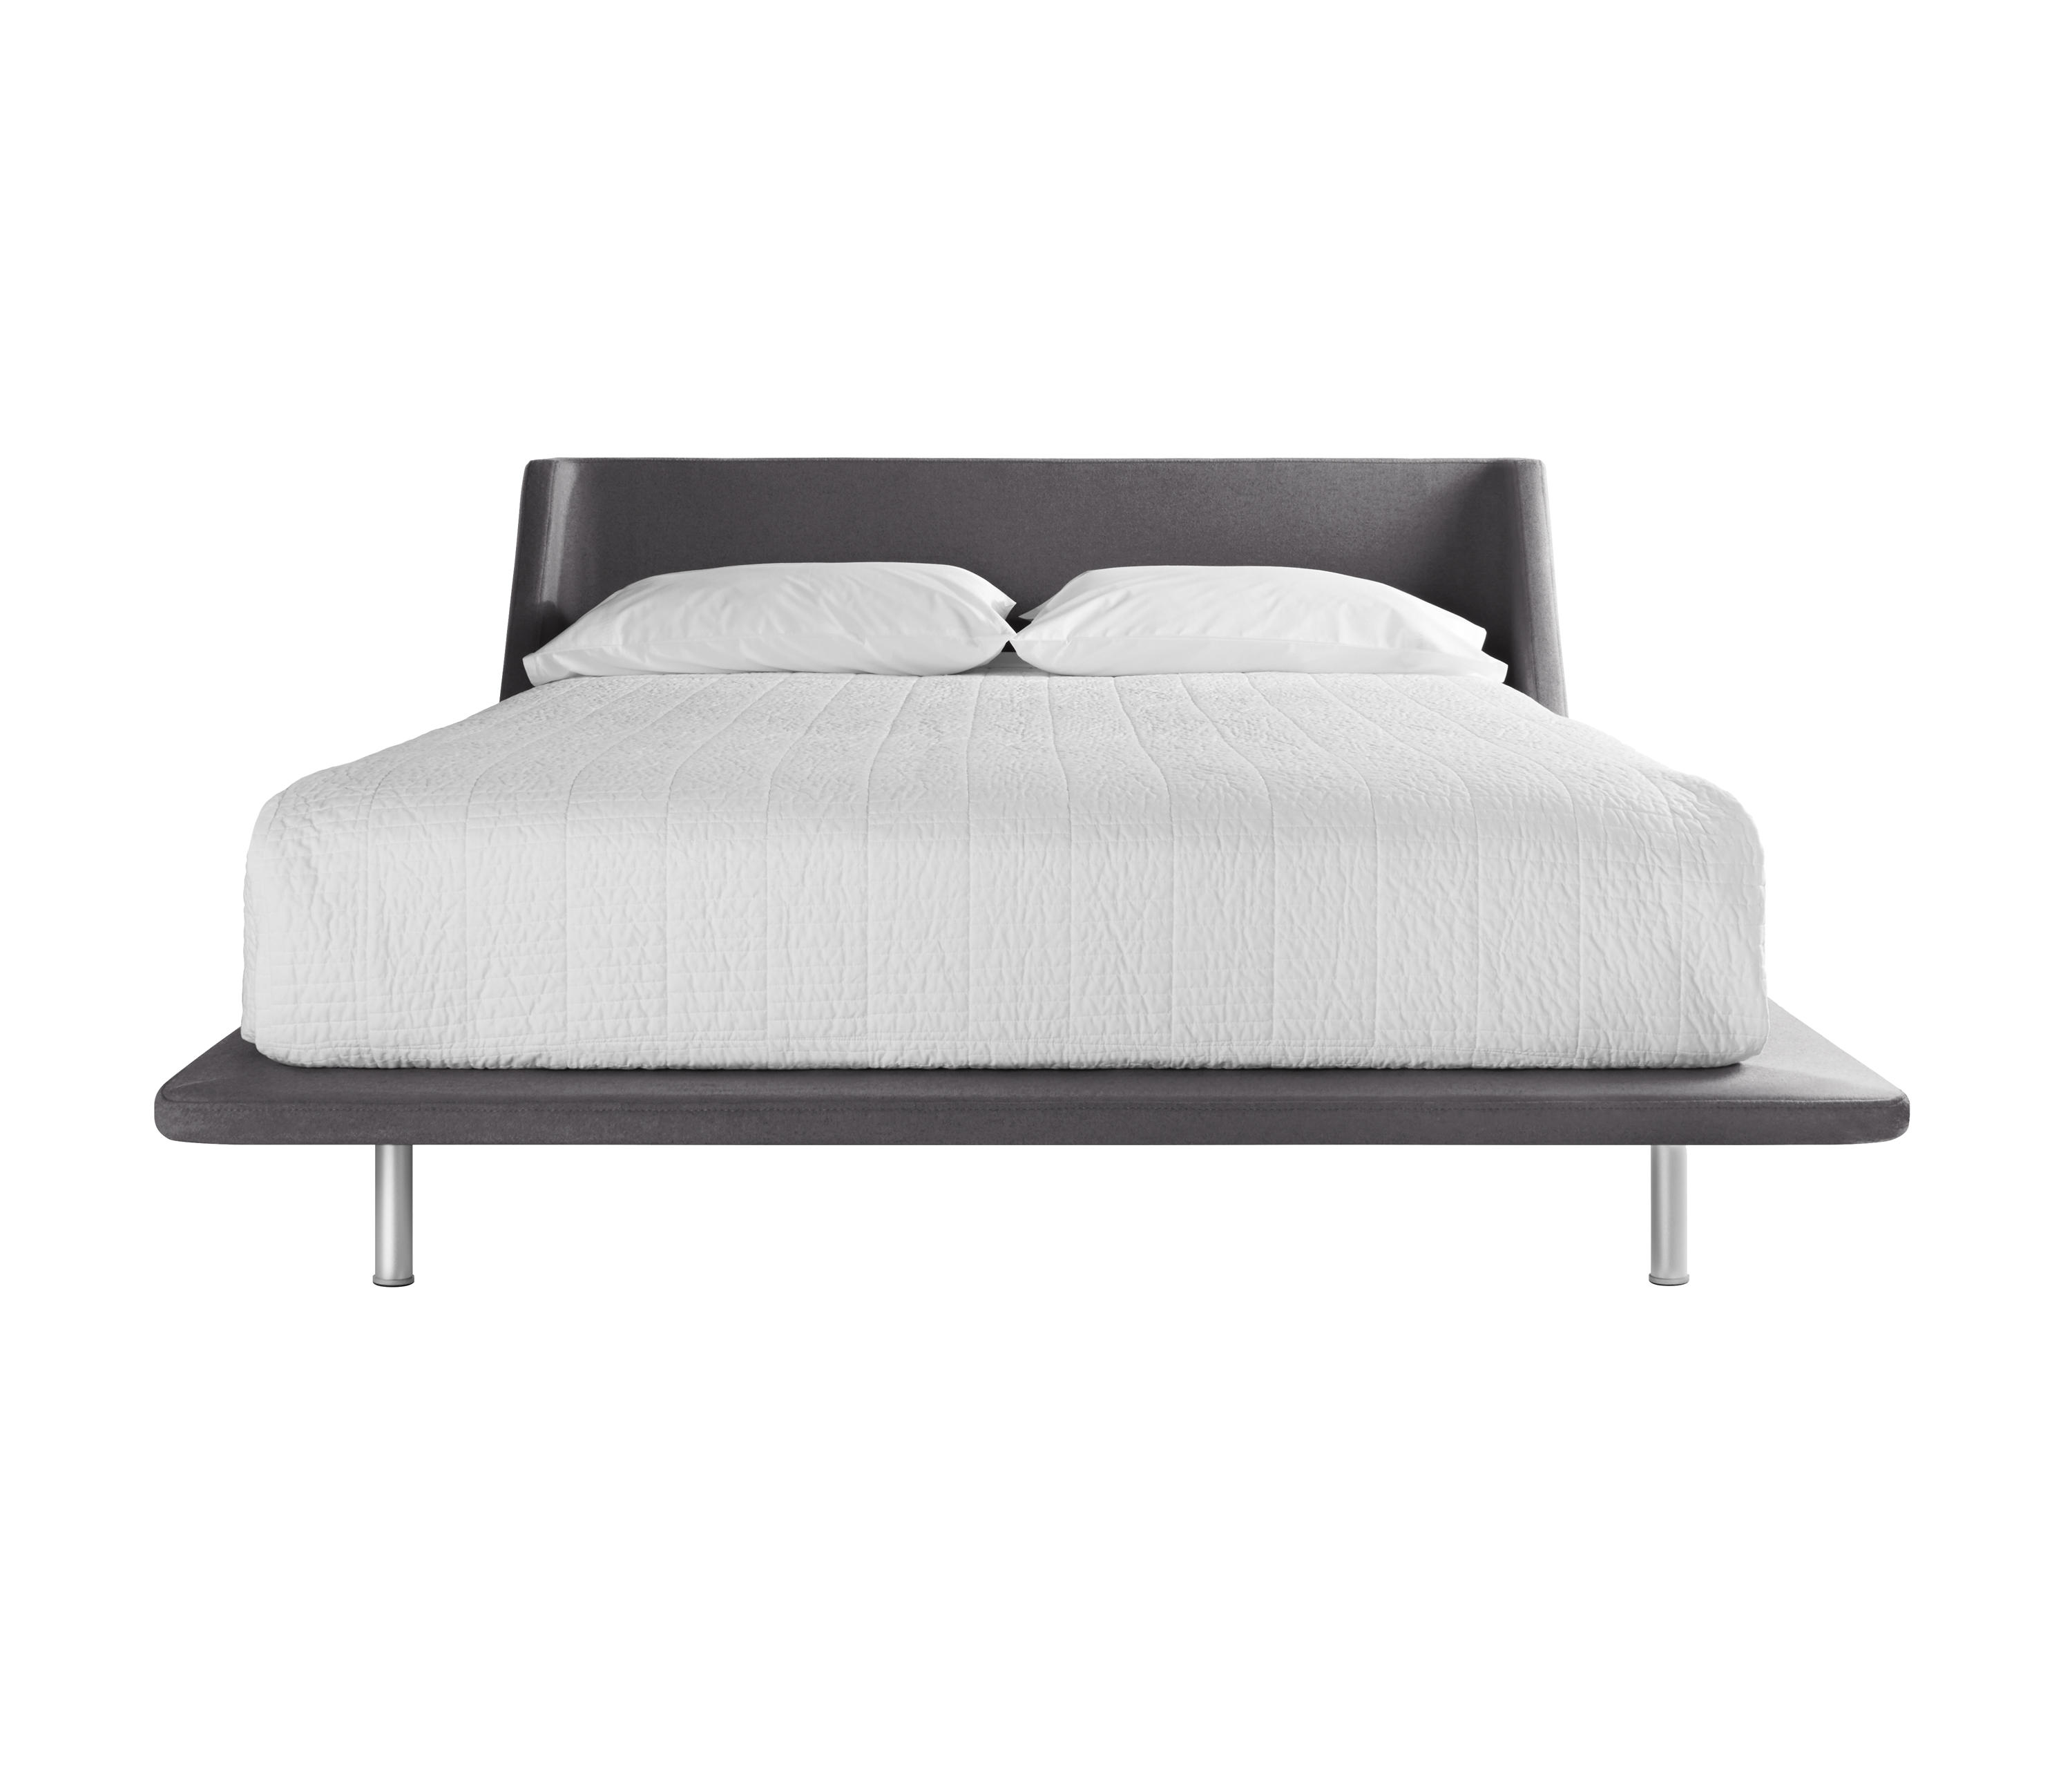 Nook Full Bed Beds From Blu Dot, Blu Dot Bed Frame